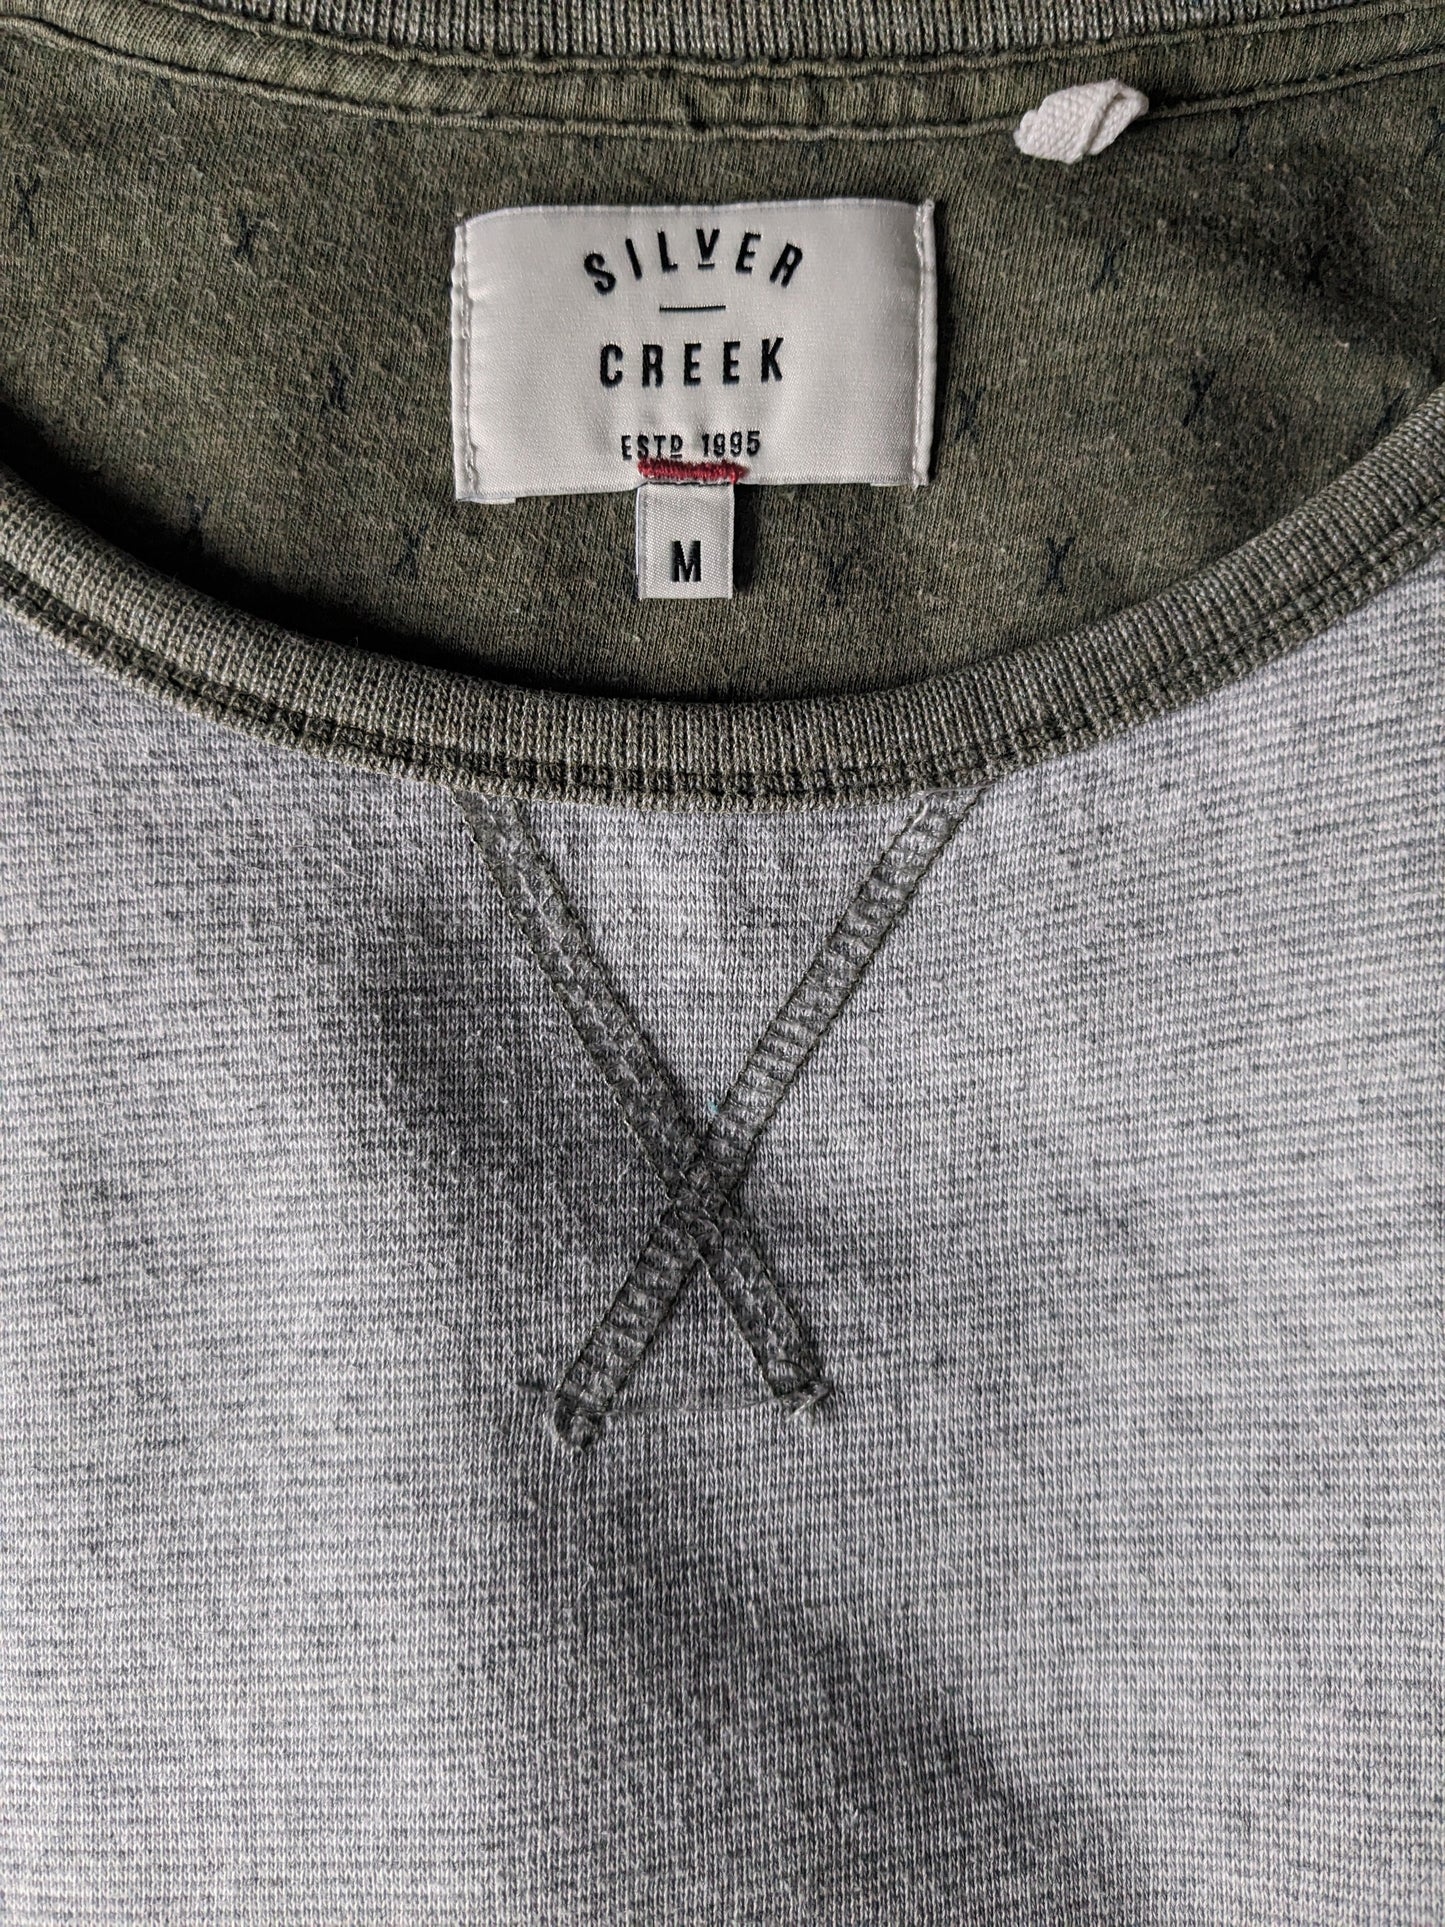 Silvercreek -Pullover mit Daumenlöchern. Grau grün gestreift. Größe M.